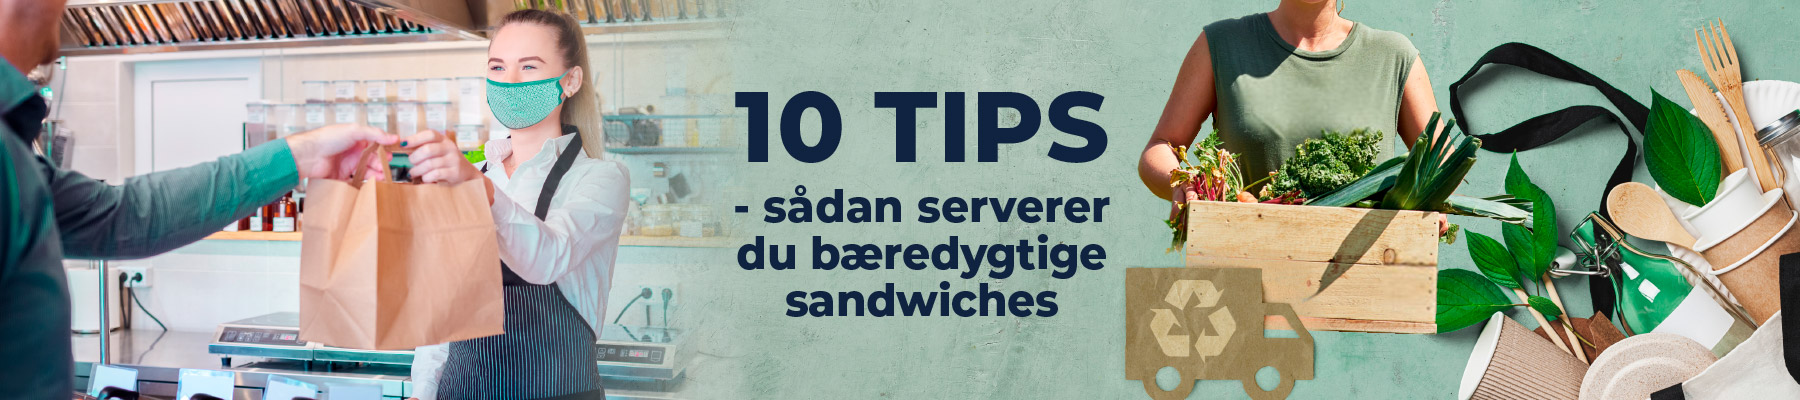 GUIDE: Sådan serverer du bæredygtige sandwiches